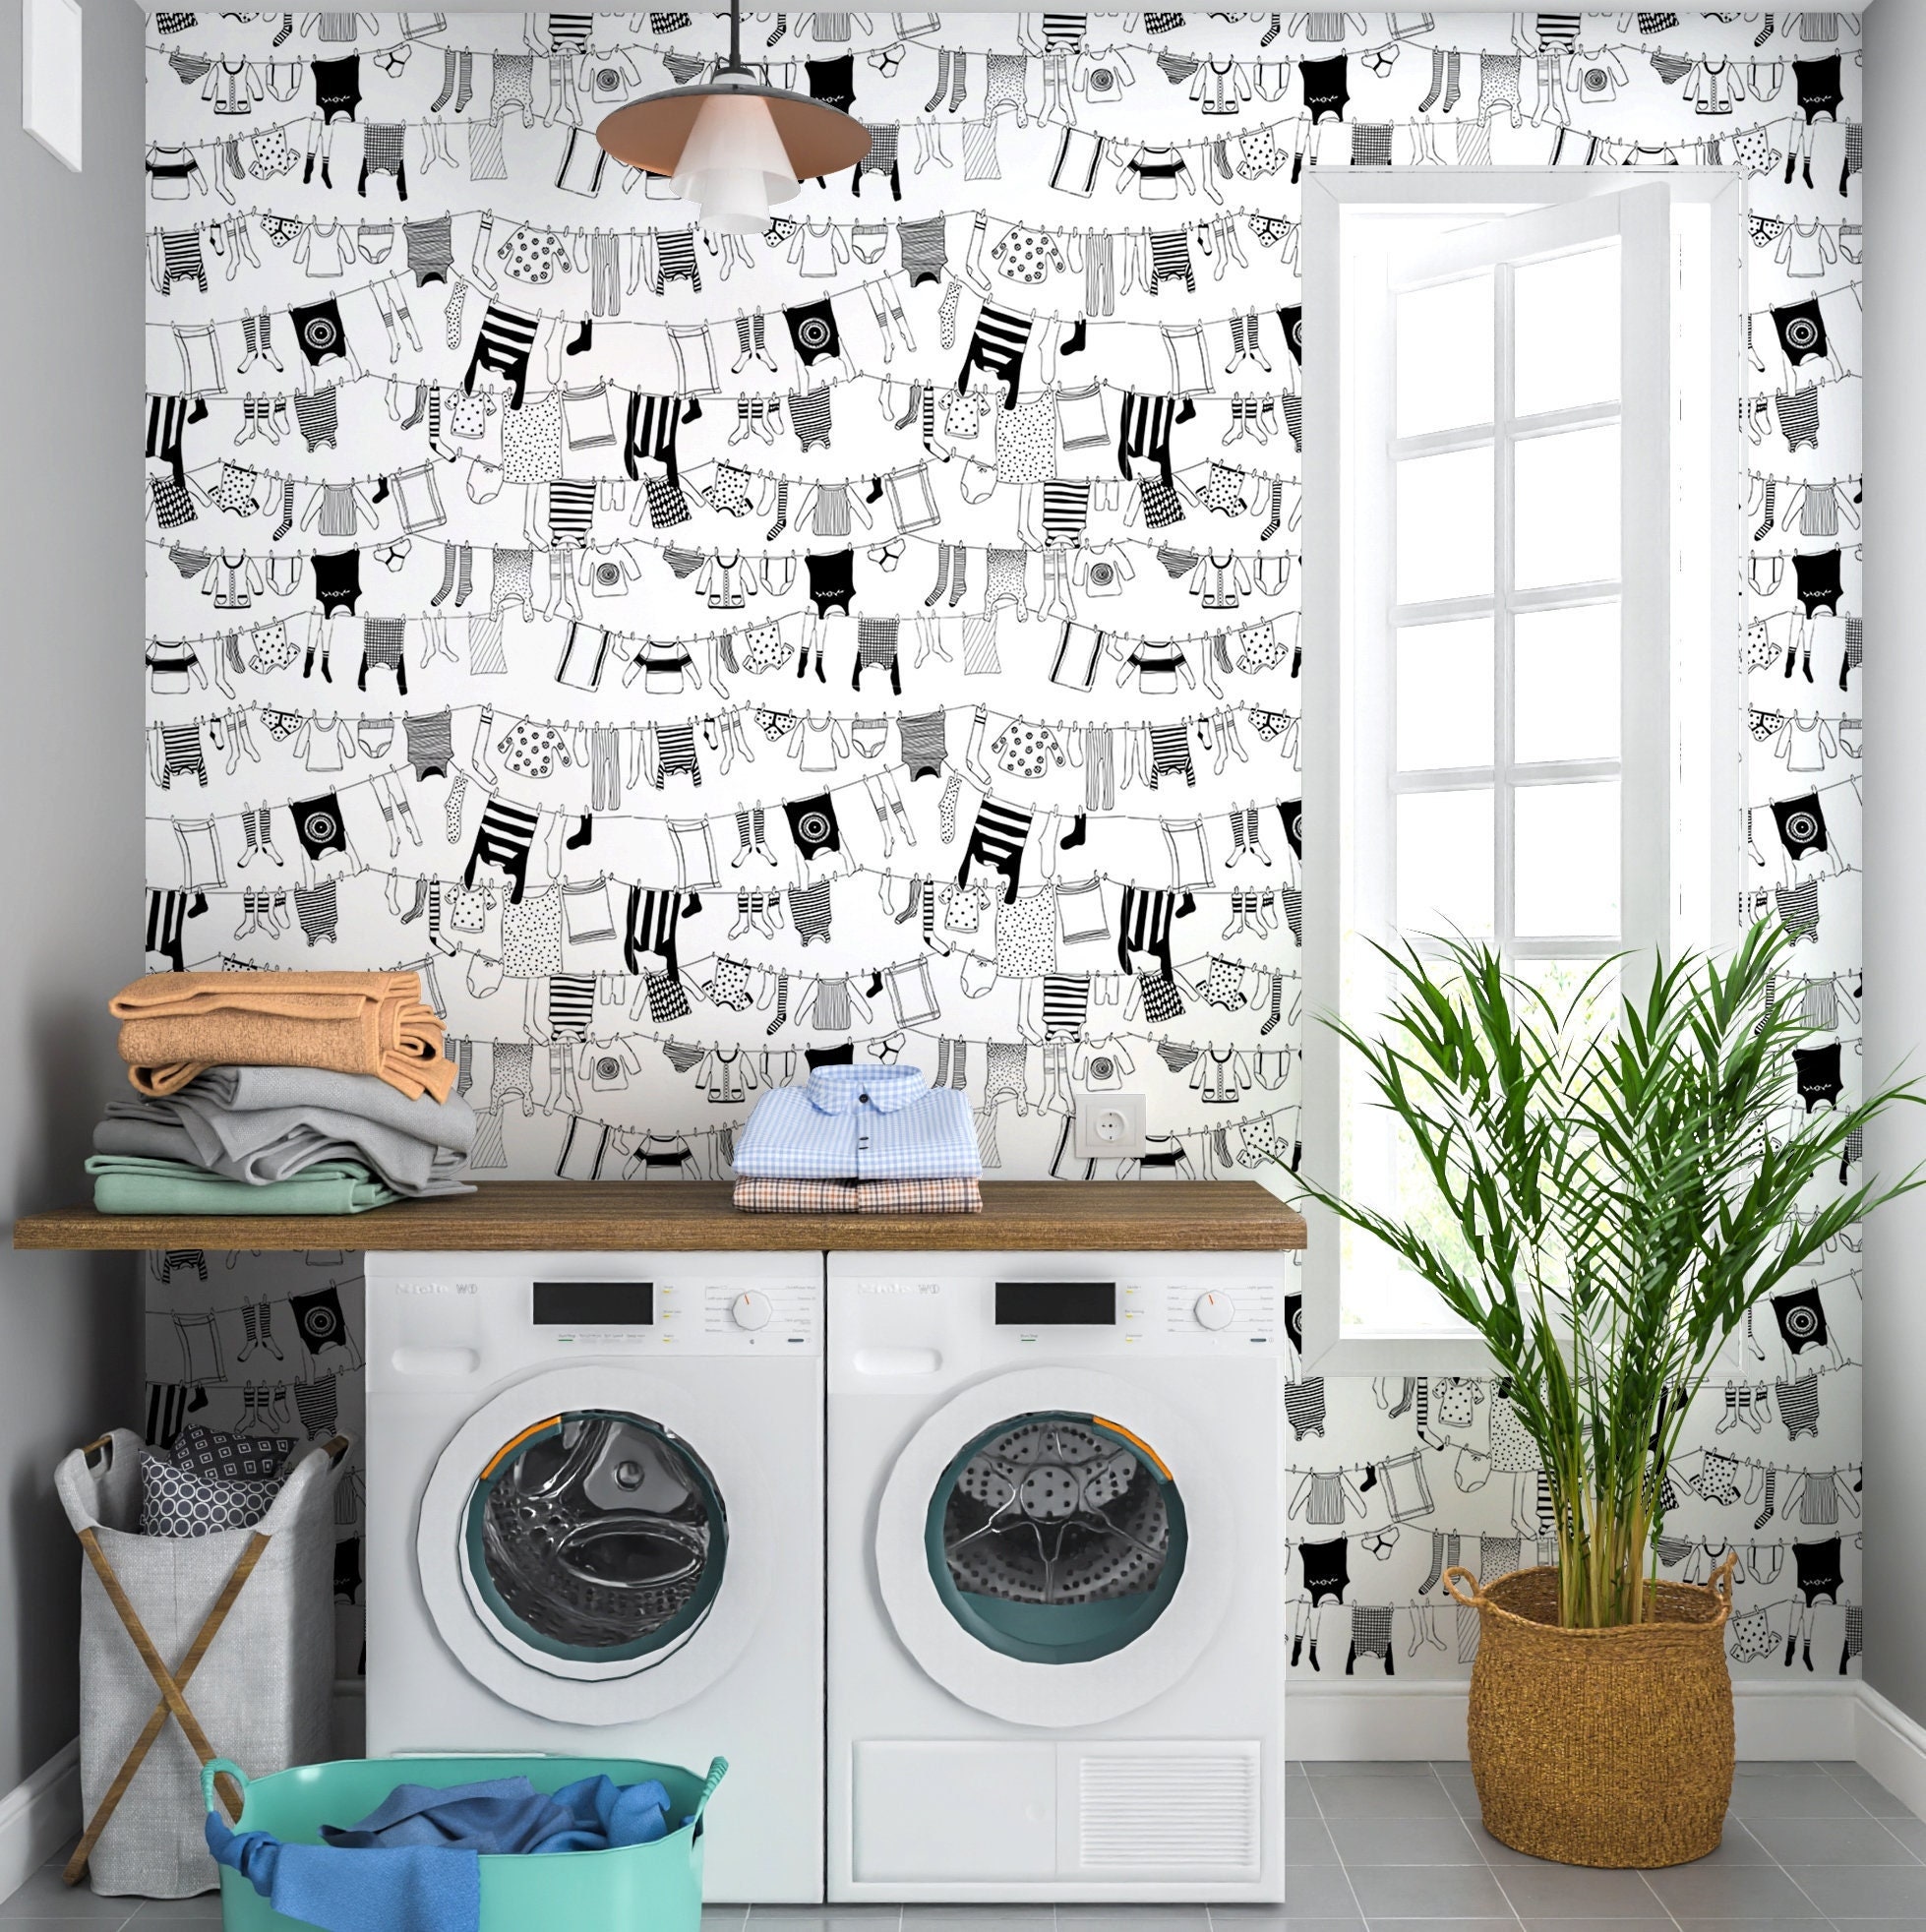 Brunschwig and Fils Zarafa Wallpaper On Laundry Room Walls  Transitional   Living Room